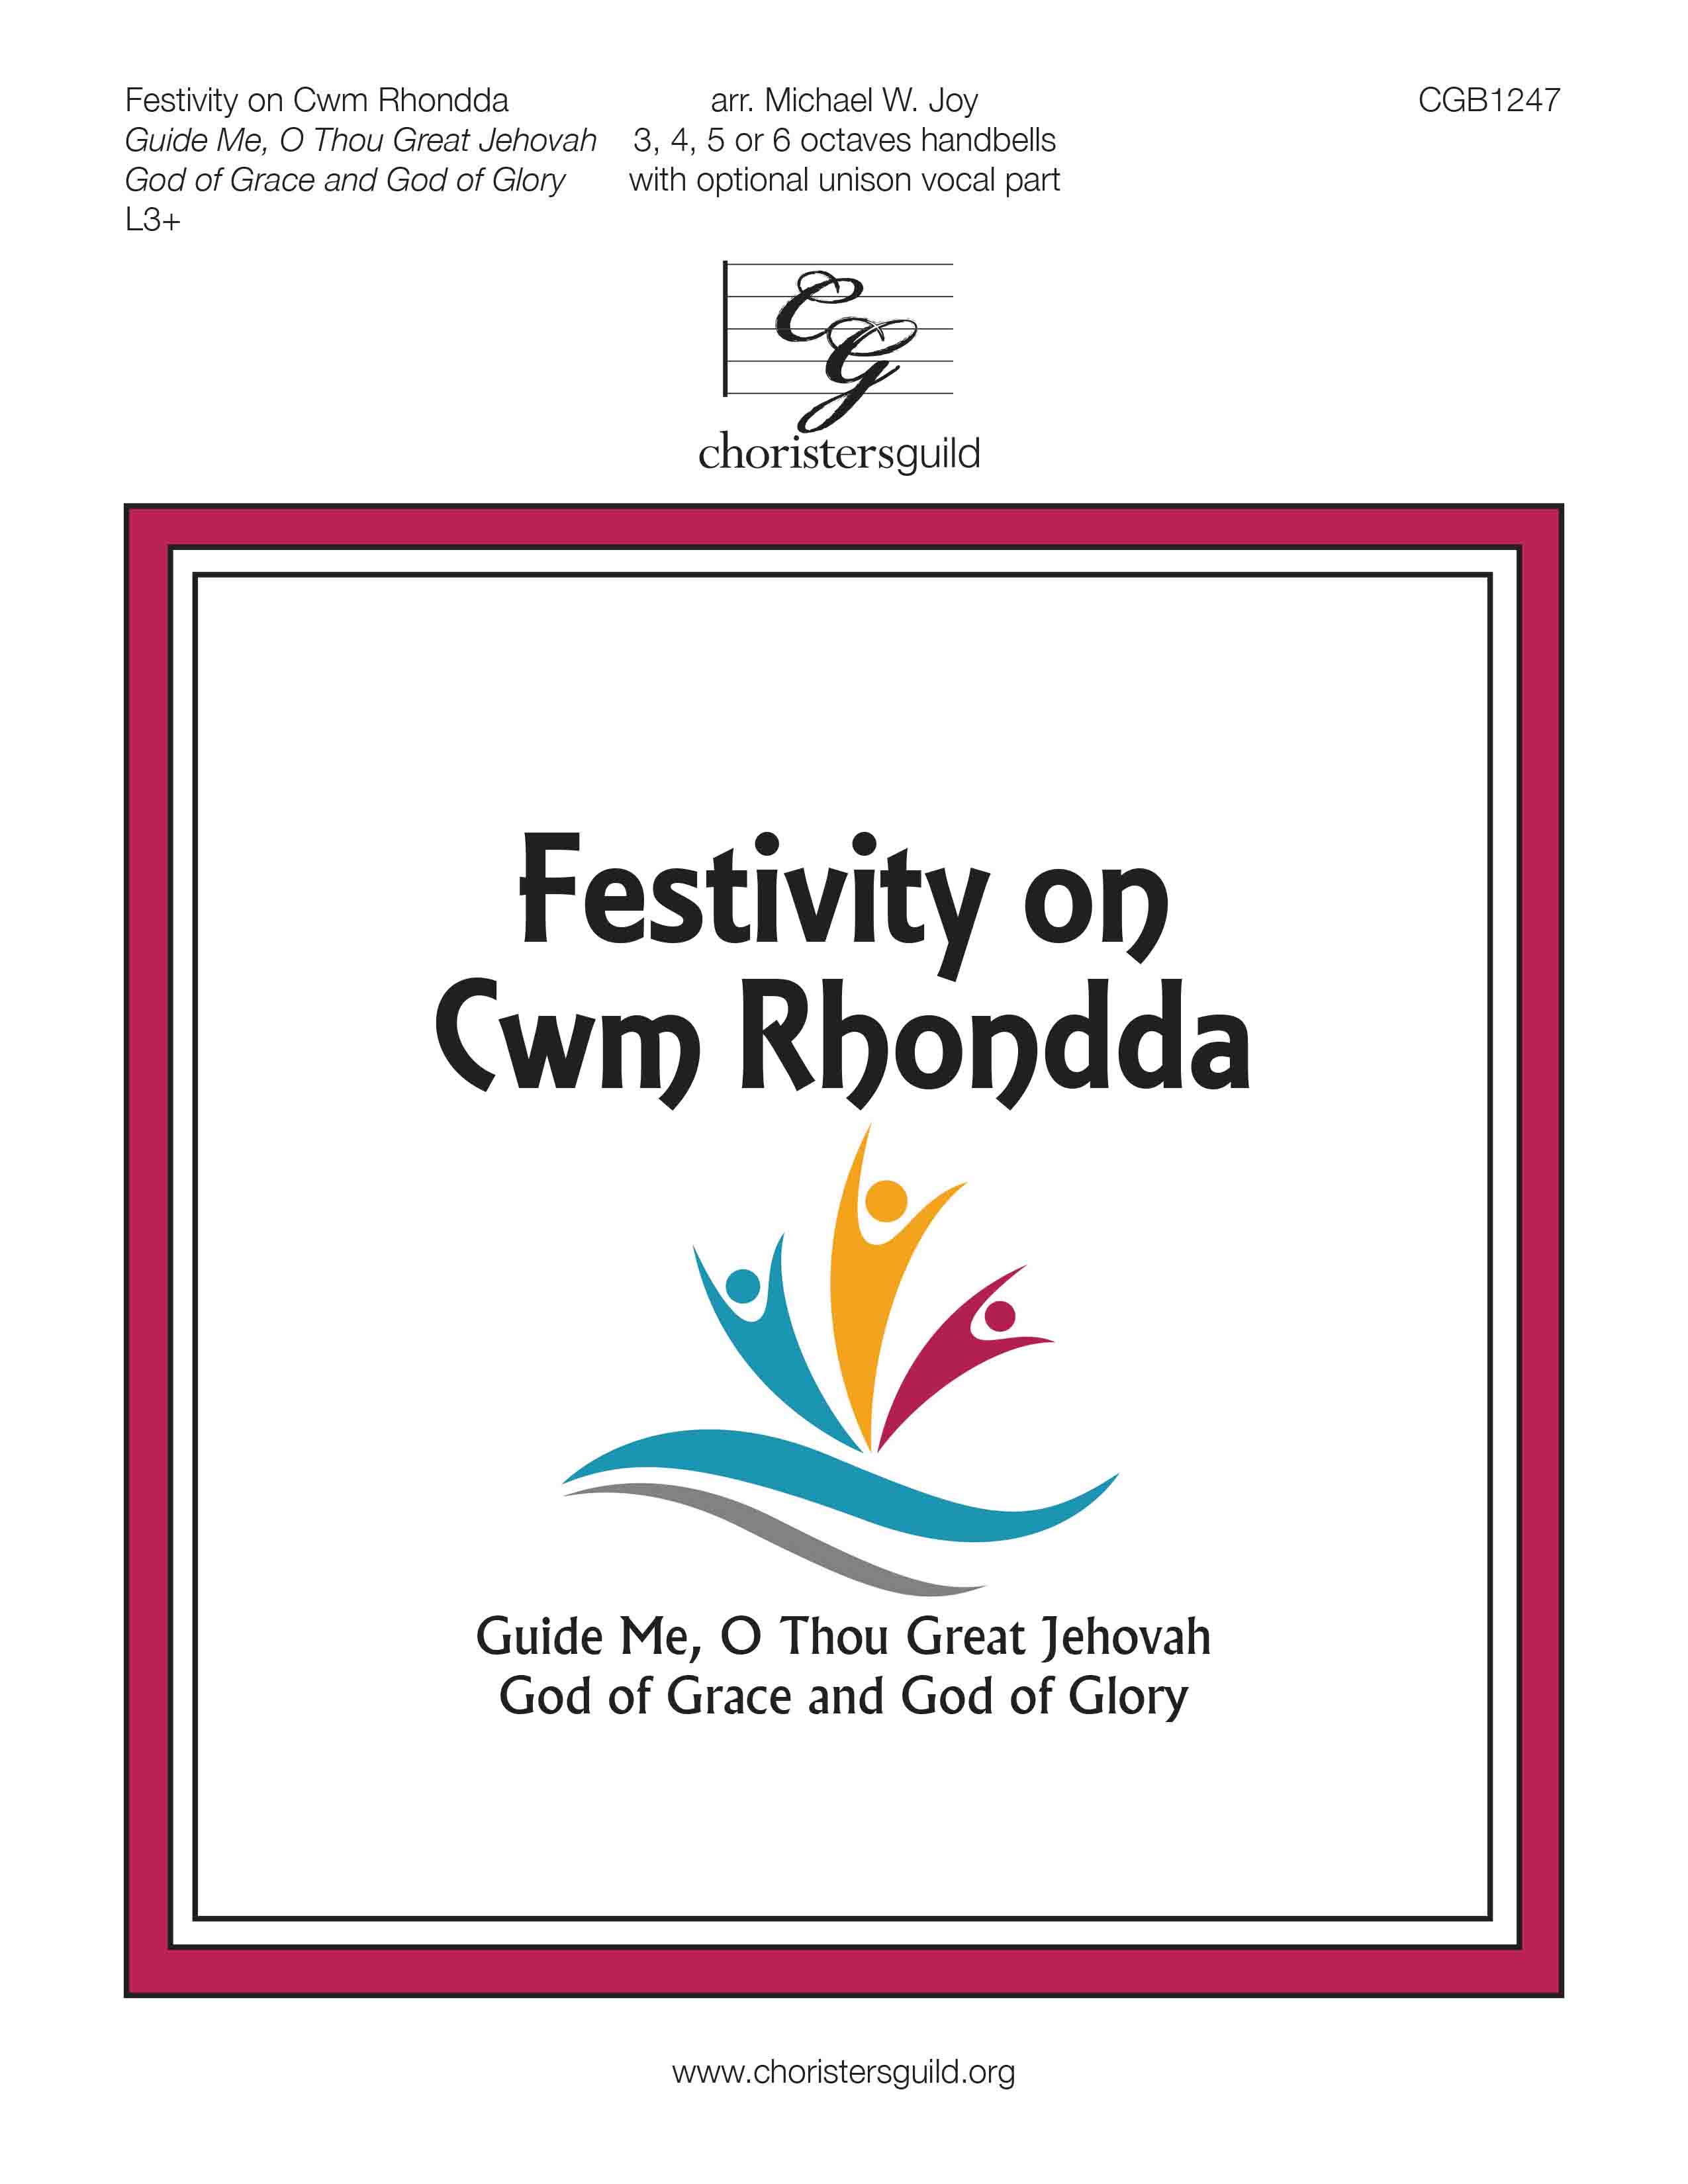 Festivity on Cwm Rhondda